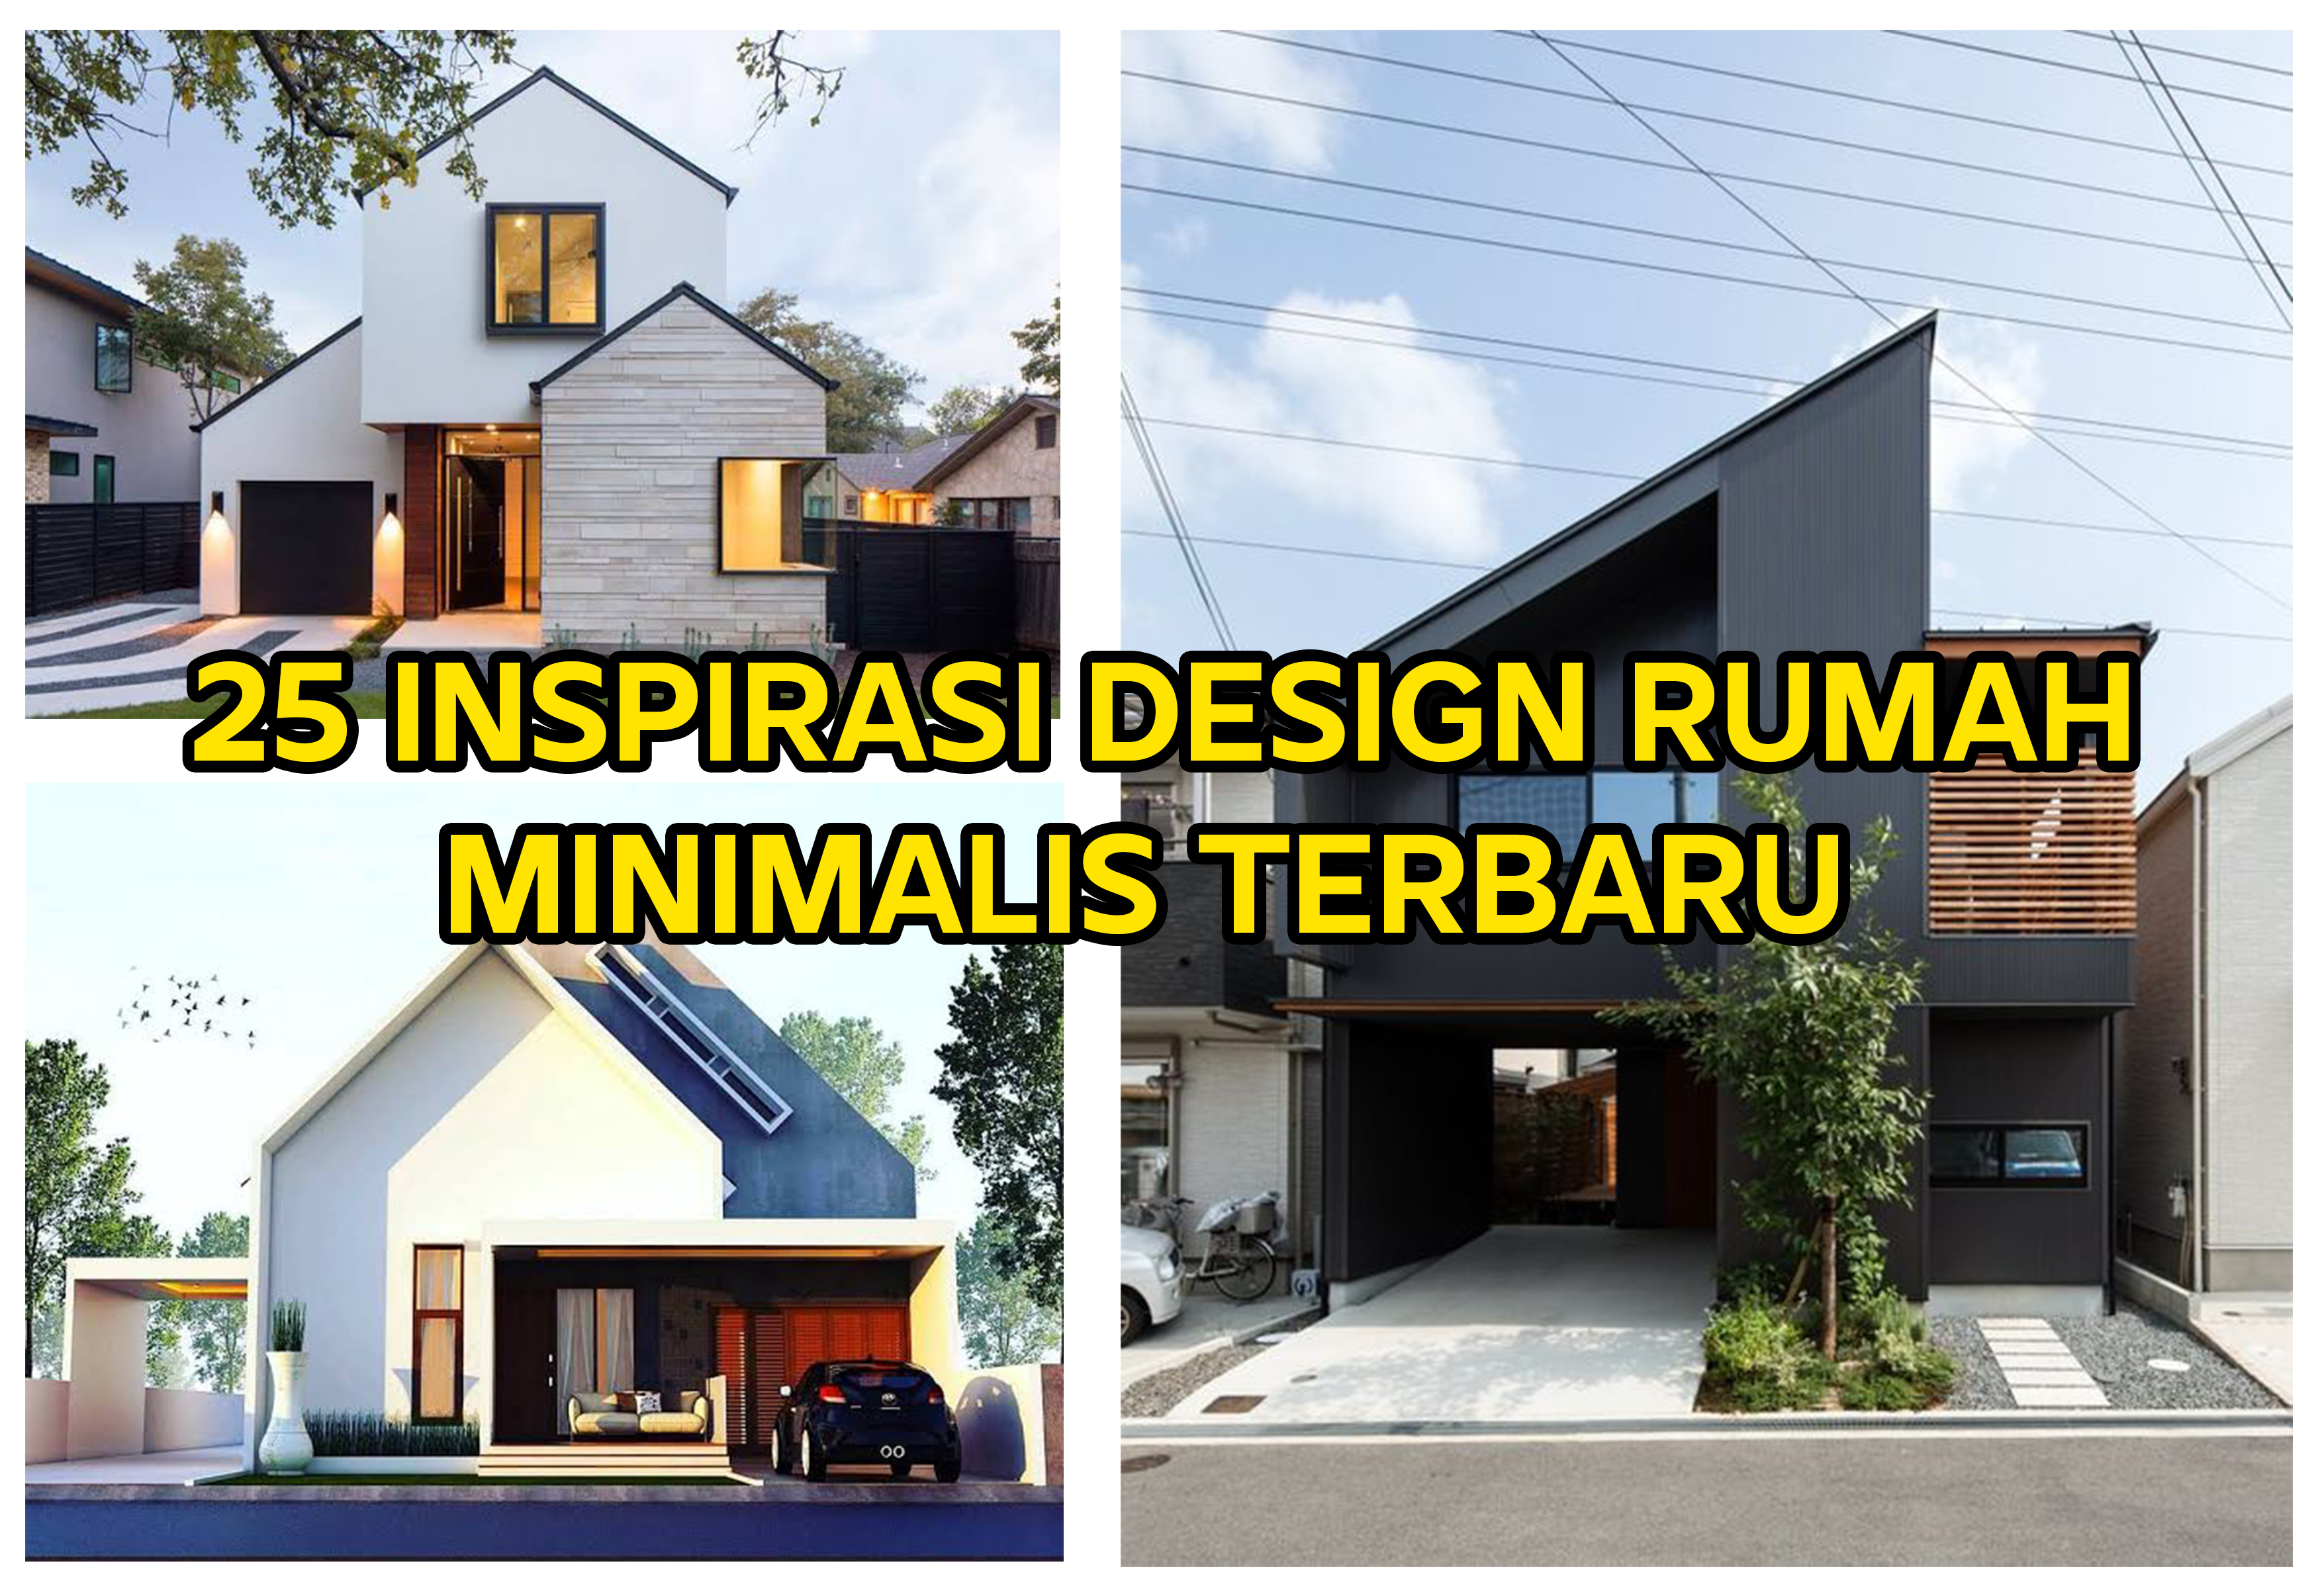 25 Inspirasi Desain Rumah Minimalis Terbaru Bintorobuild Jasa